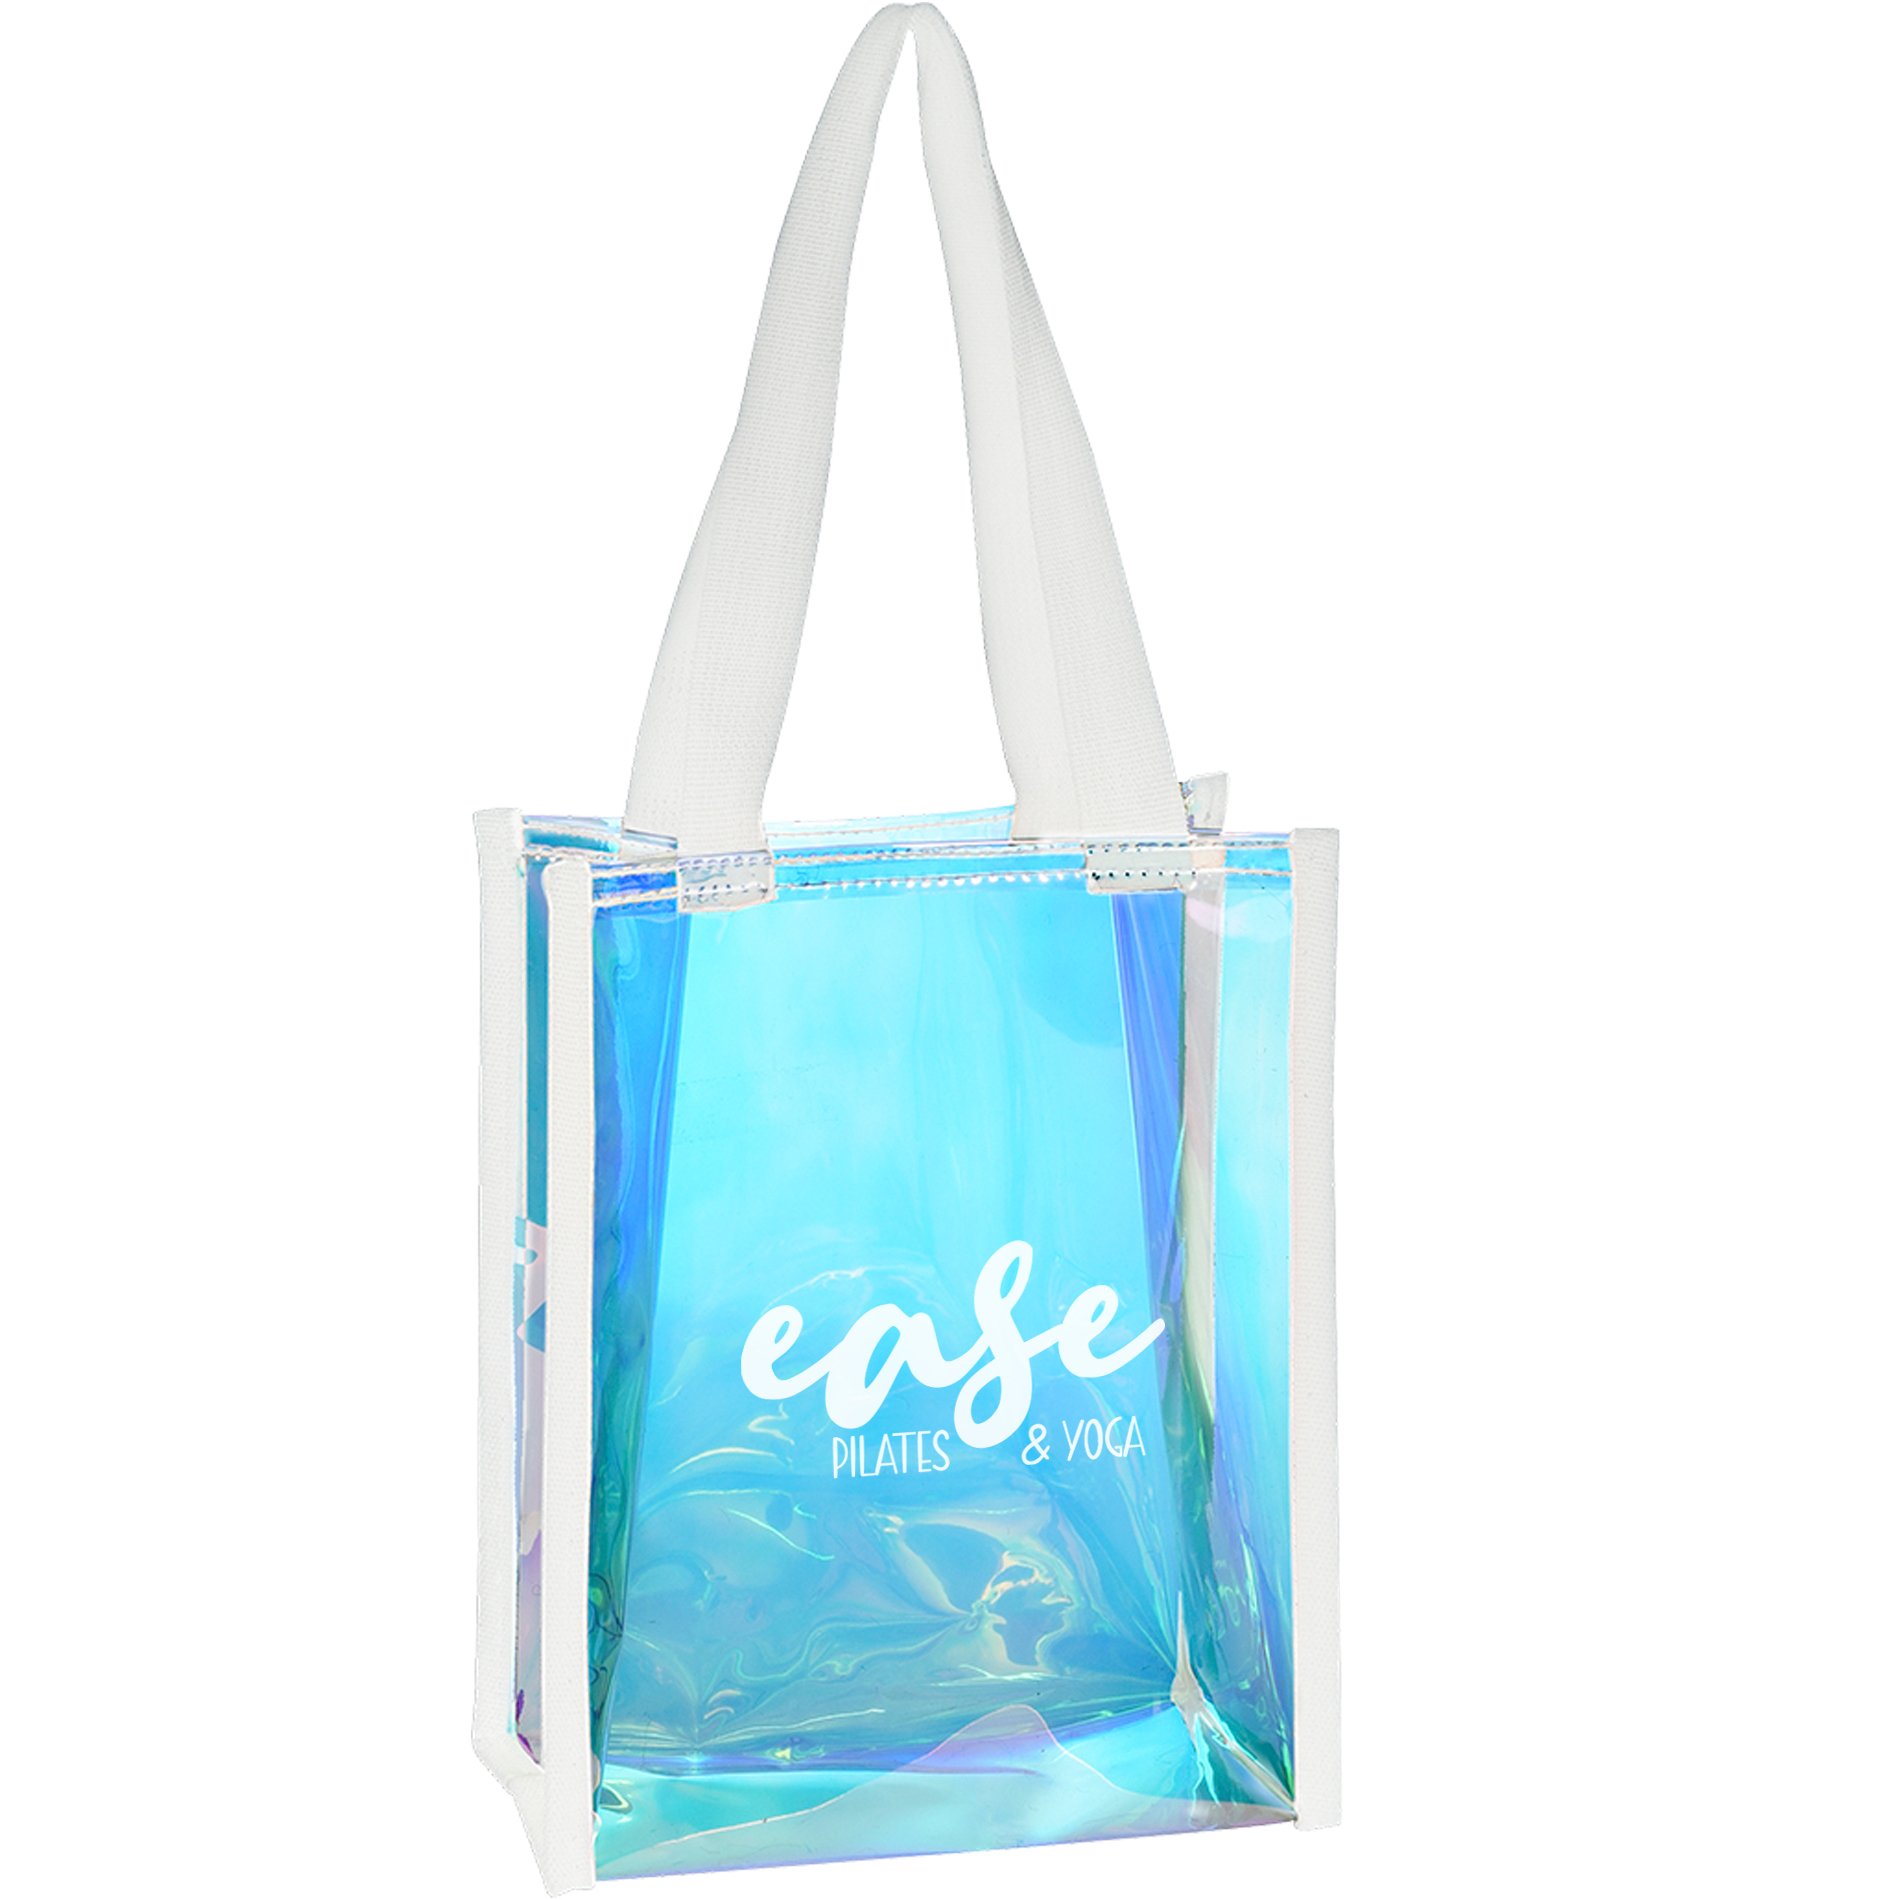 Fire+Embers Hot Yoga-Eco Tote Bag